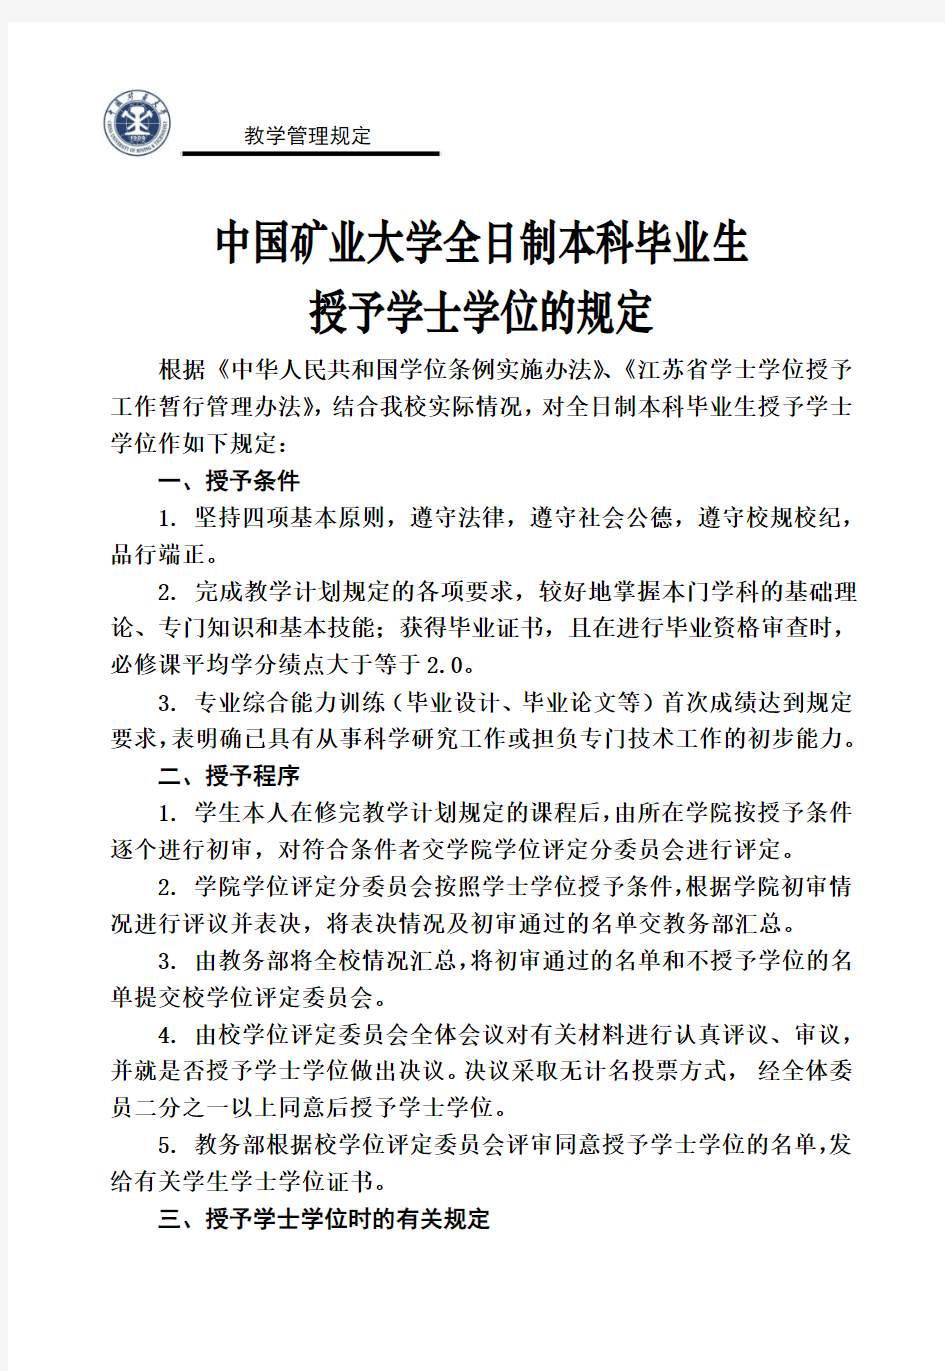 中国矿业大学全日制本科毕业生授予学士学位的规定